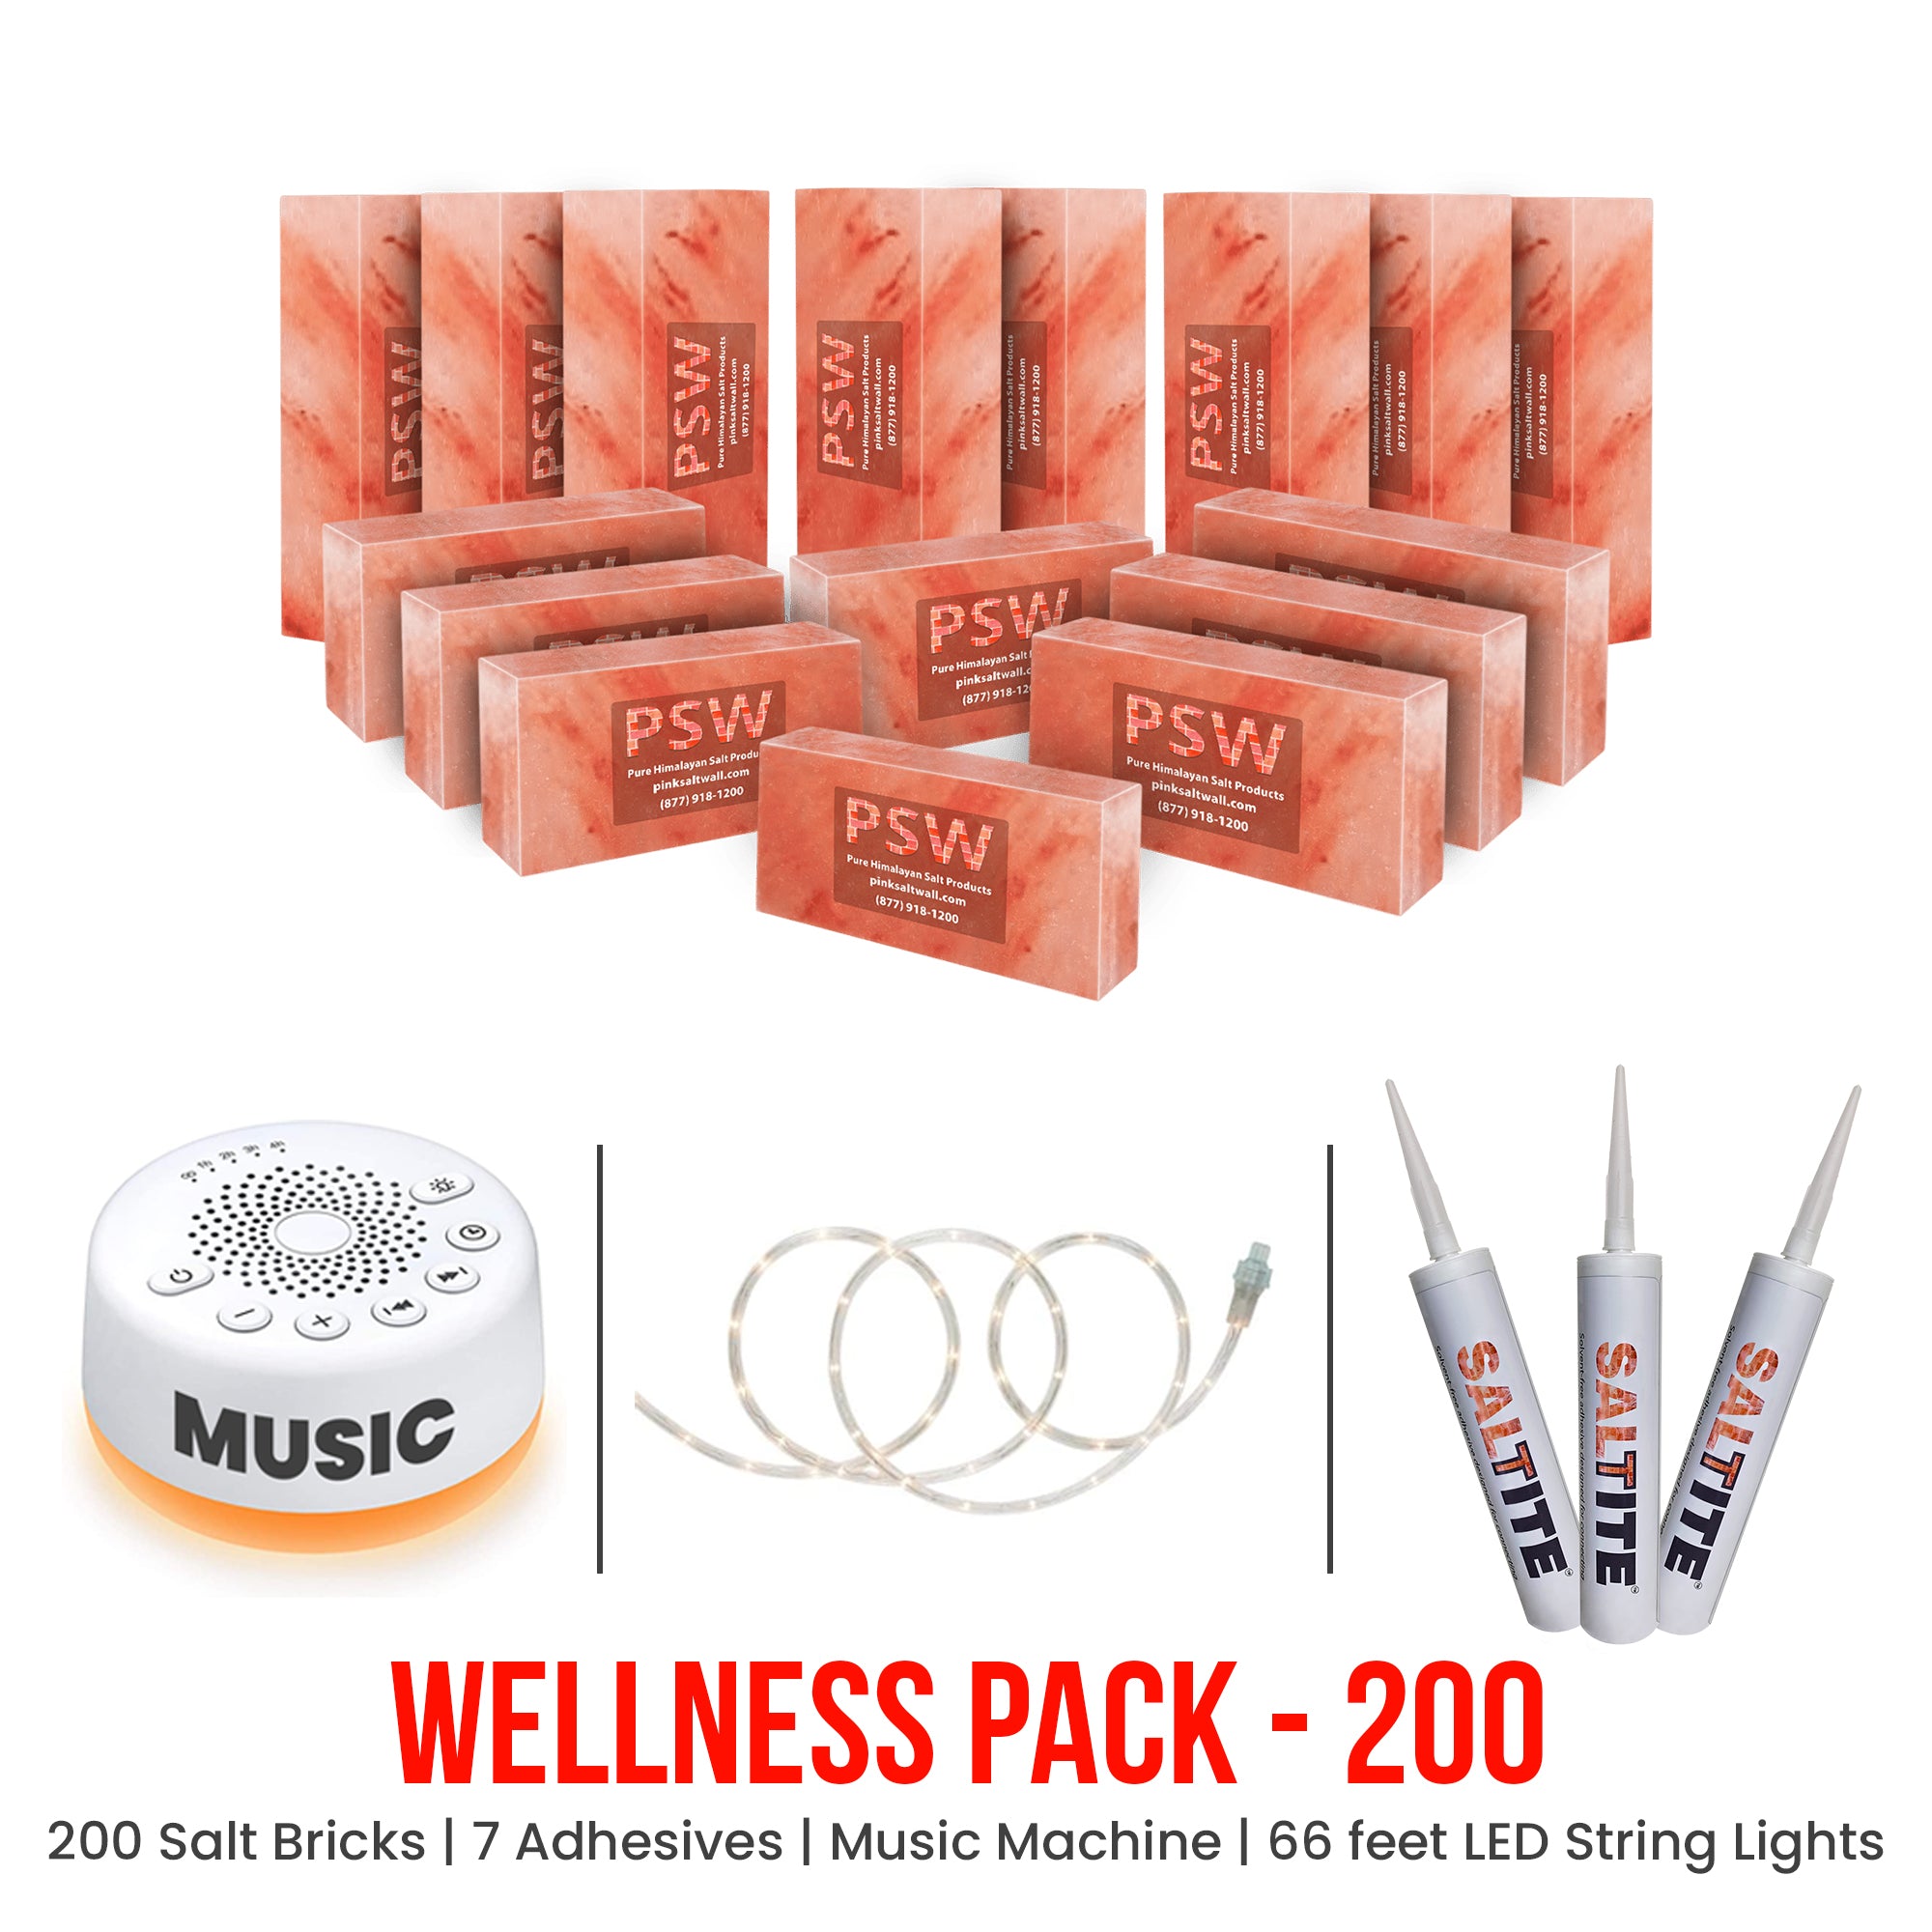 Wellness Pack - 200 Himalayan Salt Bricks 8" x 4" x 2"